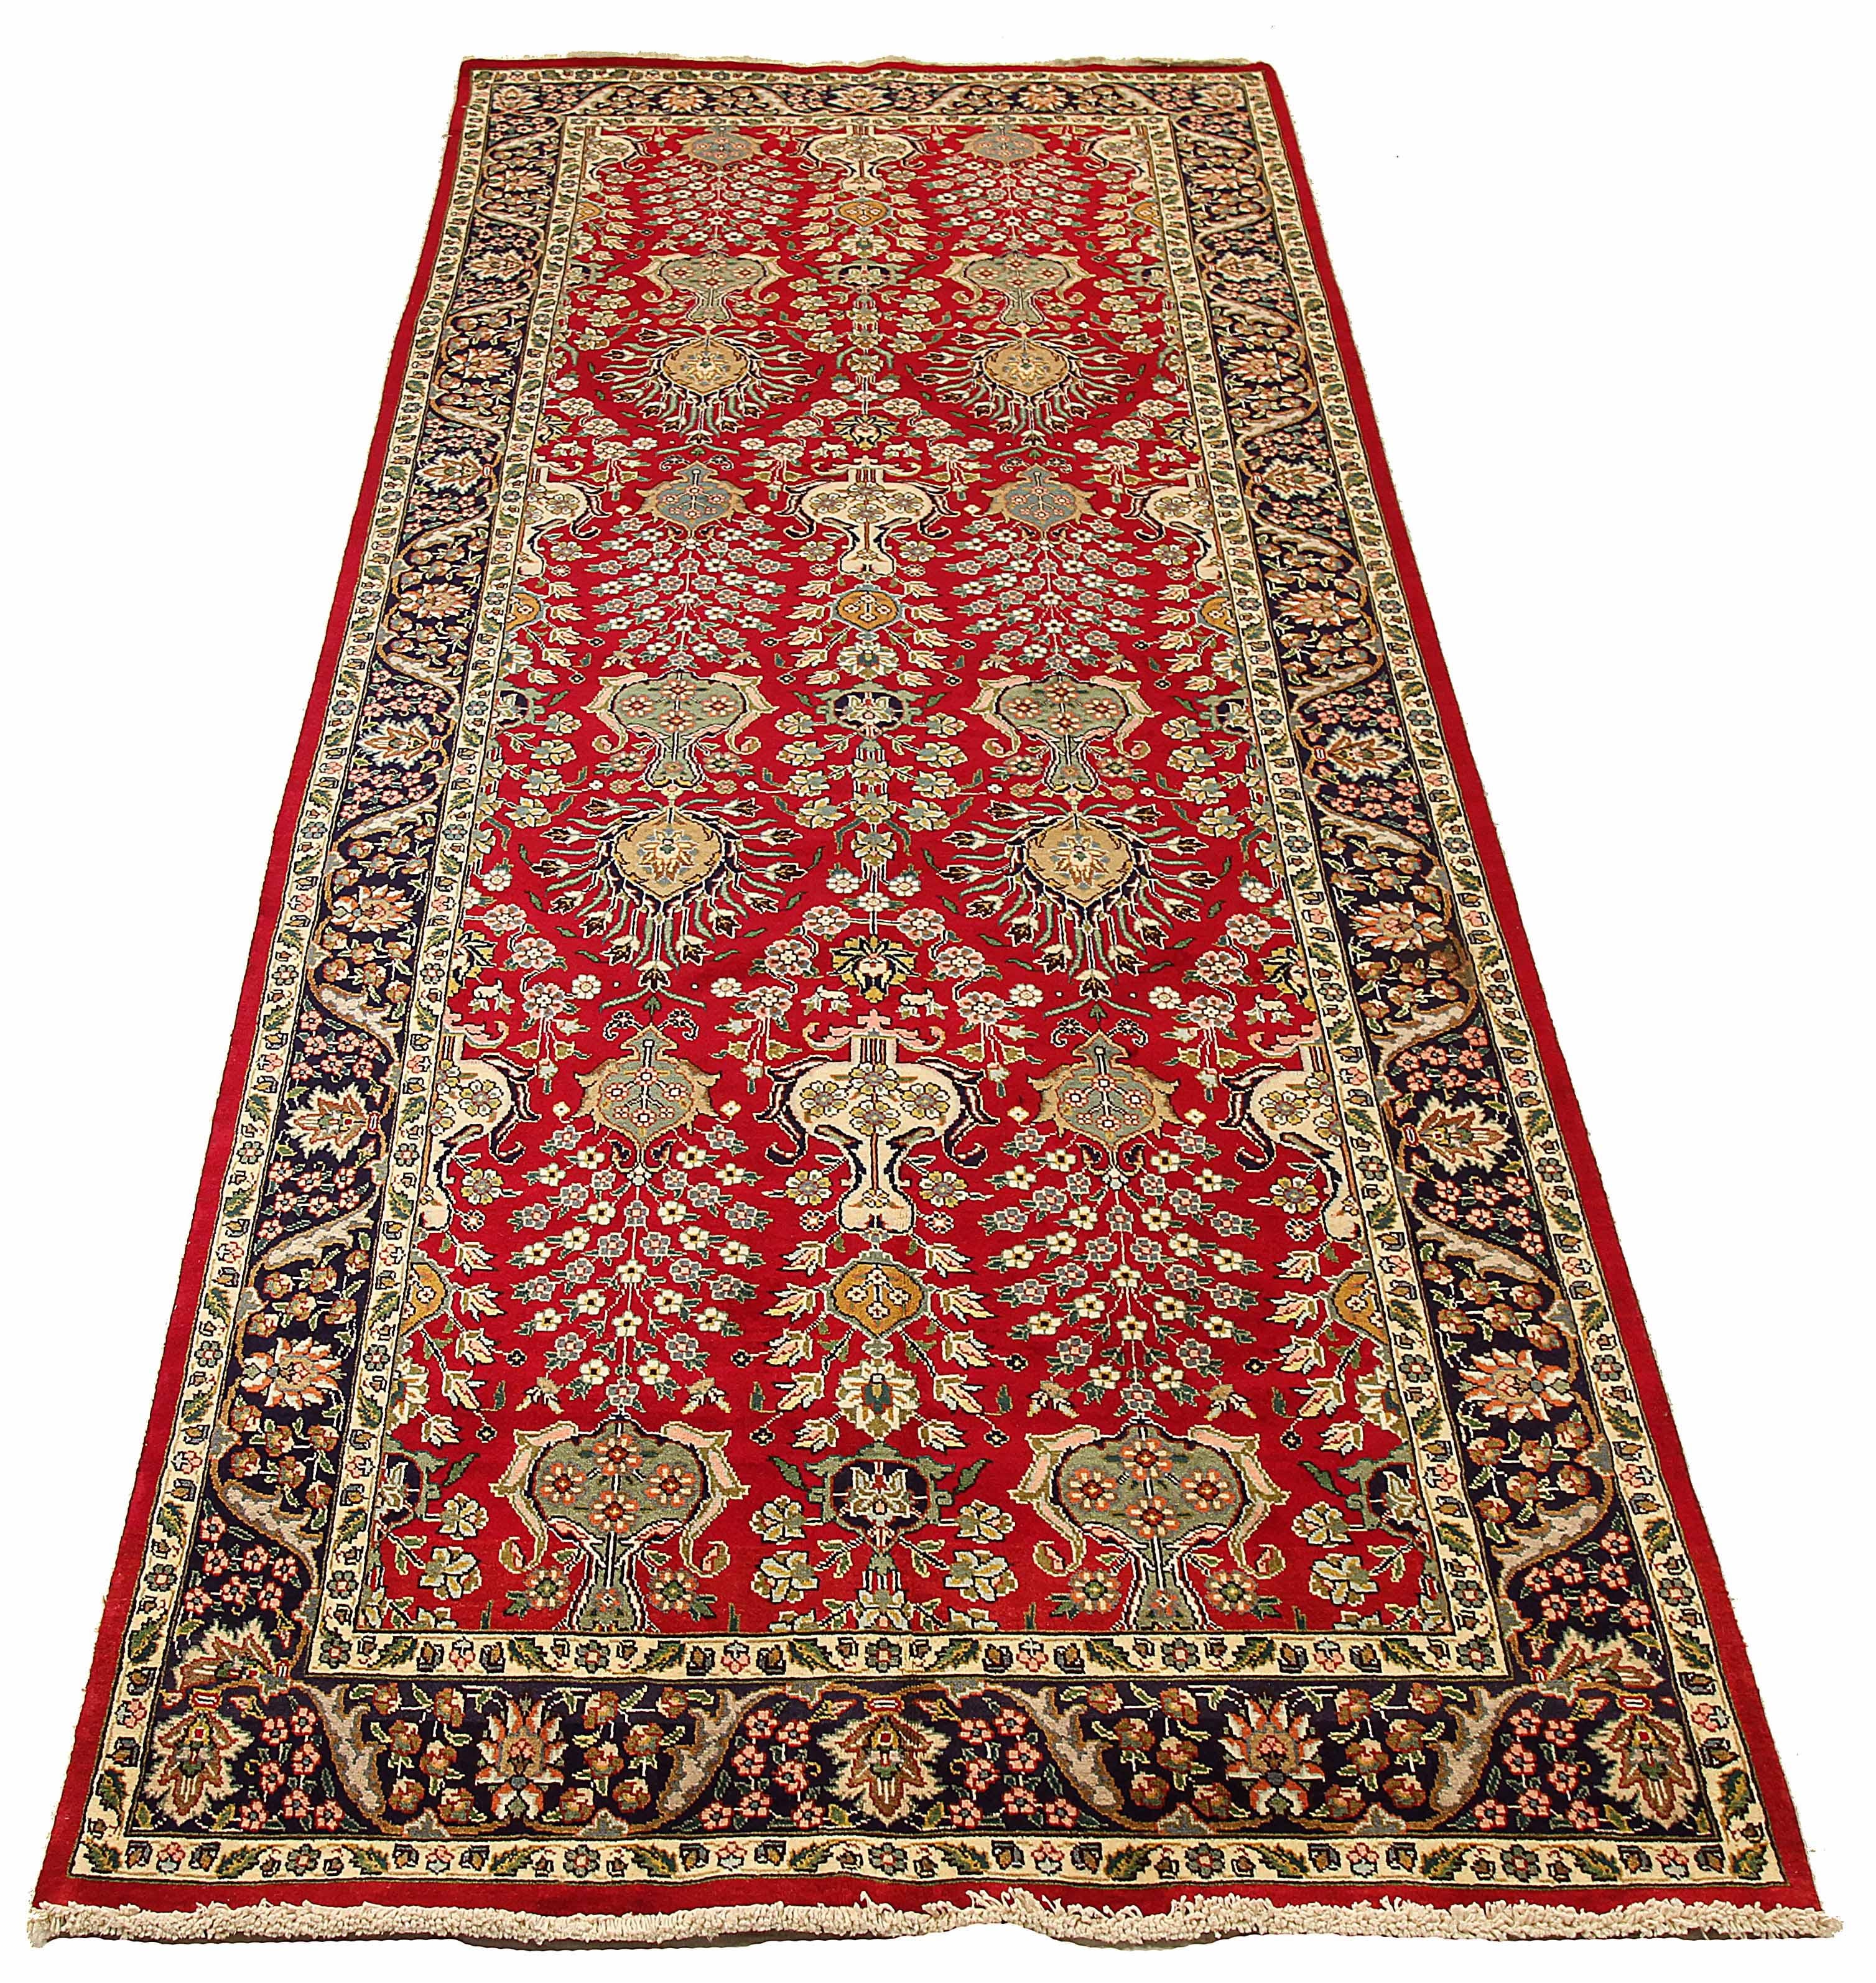 Ancien tapis persan tissé à la main à partir de la meilleure laine de mouton. Il est coloré avec des colorants végétaux entièrement naturels, sans danger pour les humains et les animaux de compagnie. Il s'agit d'un motif traditionnel de Tabriz tissé